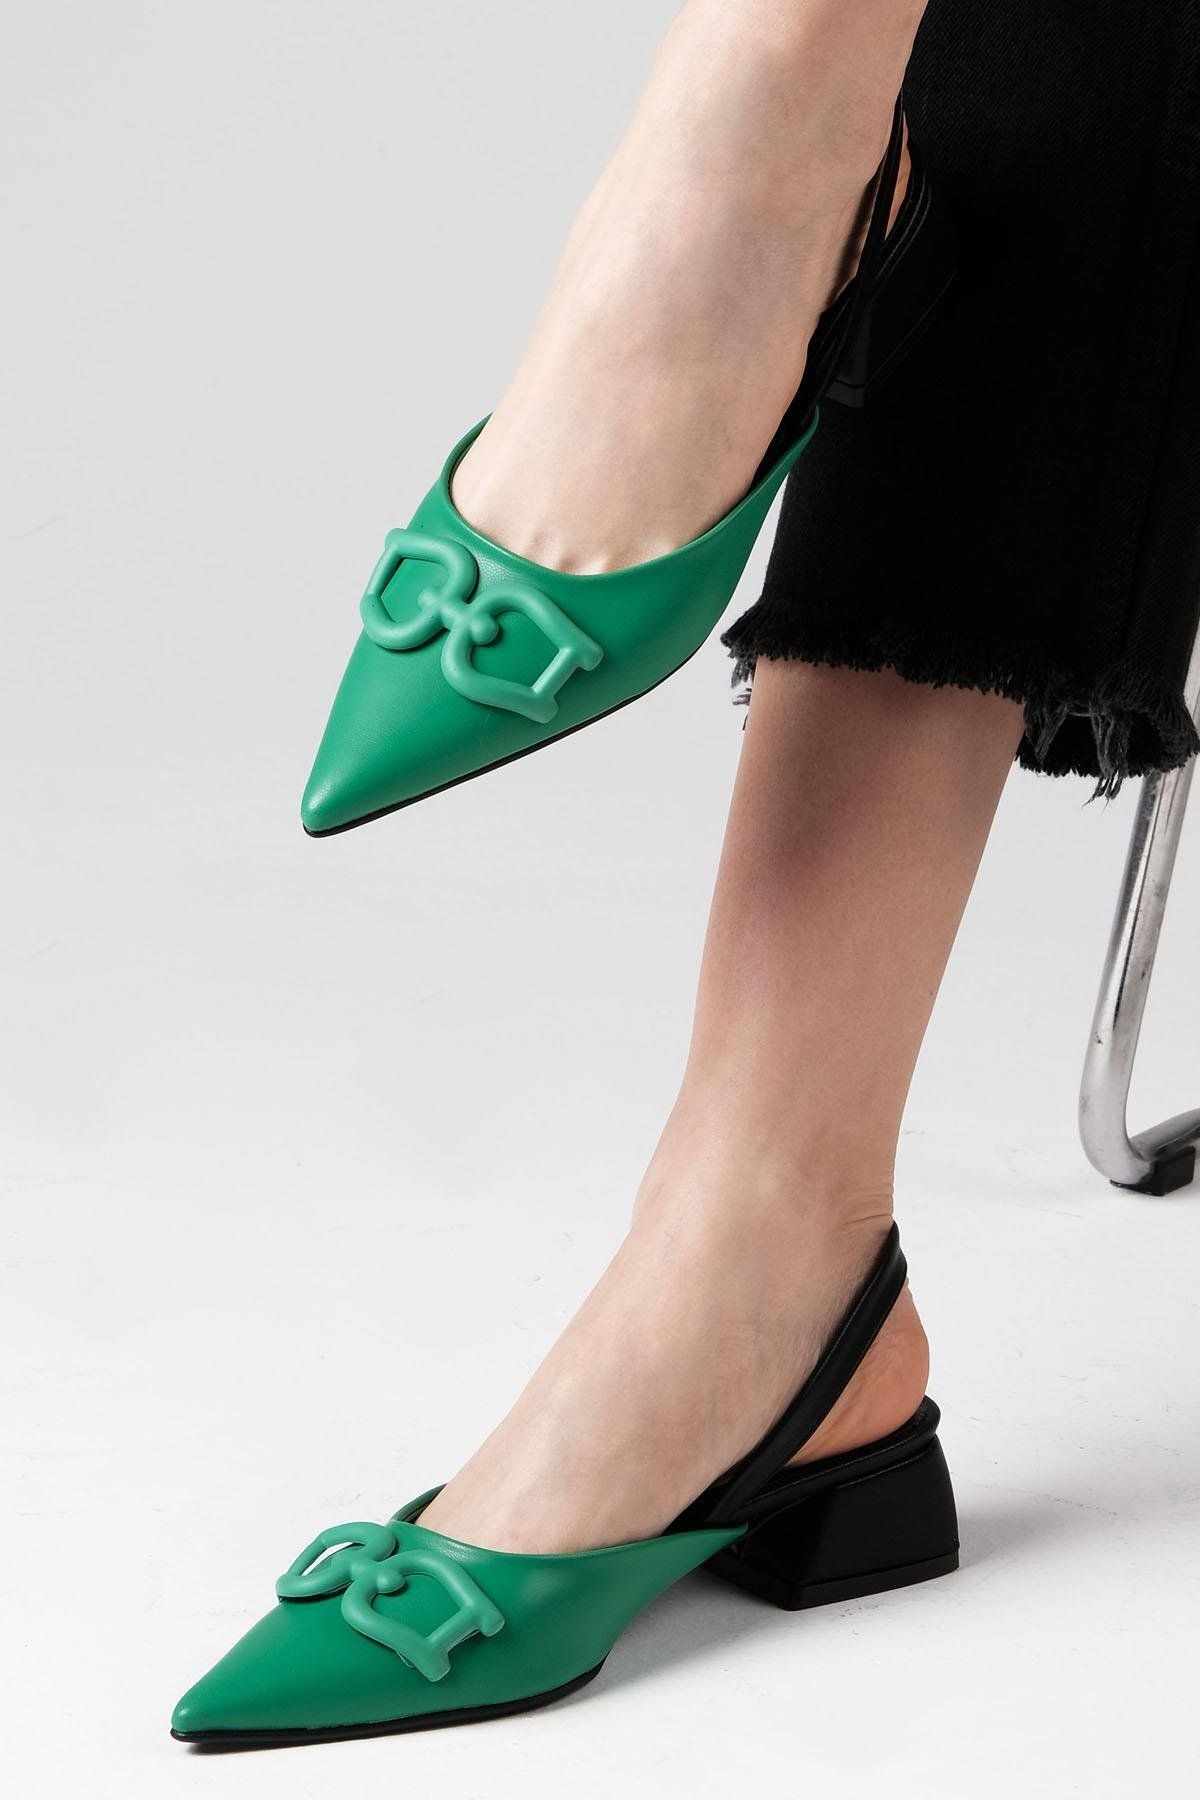 Mio Gusto Selina Yeşil Renk Arkası Açık Toka Aksesuarlı Kısa Topuklu Kadın Ayakkabı